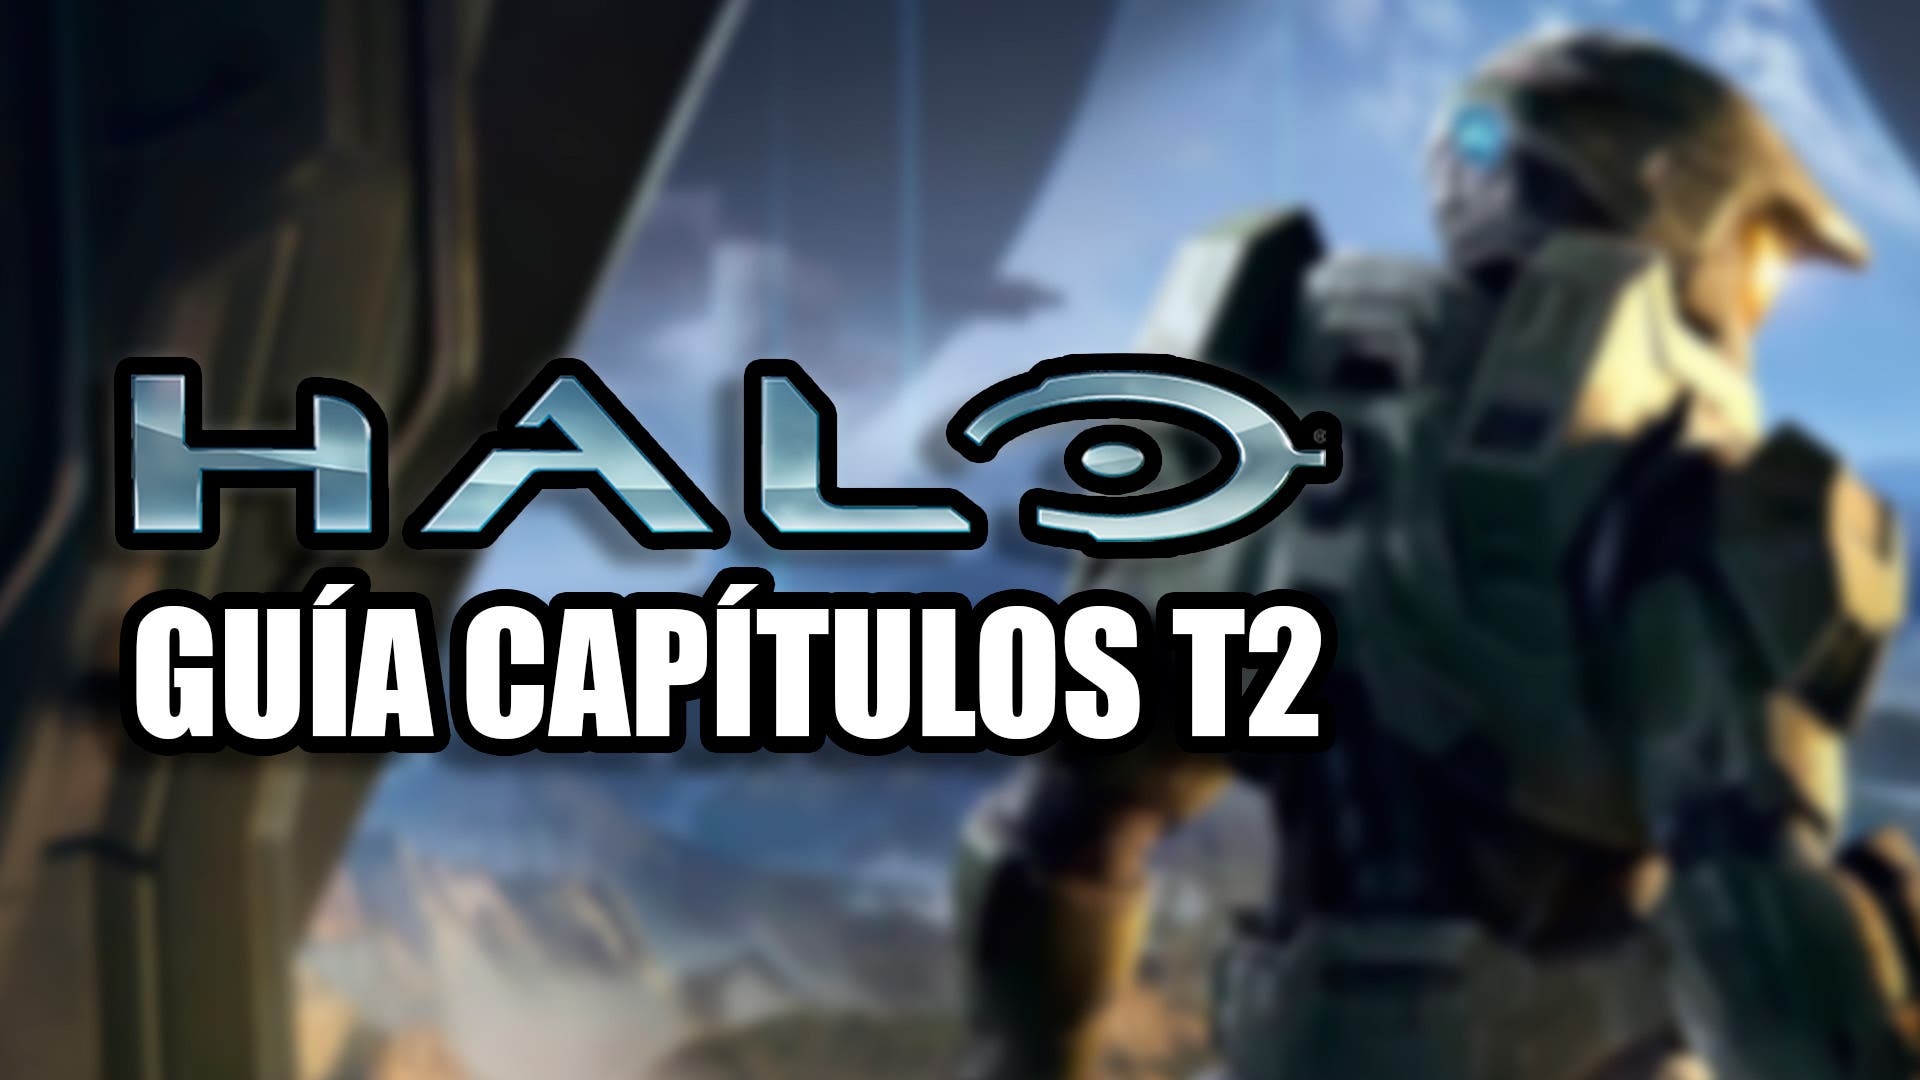 La serie de Halo se estrena hoy en Paramount+, pero en España no